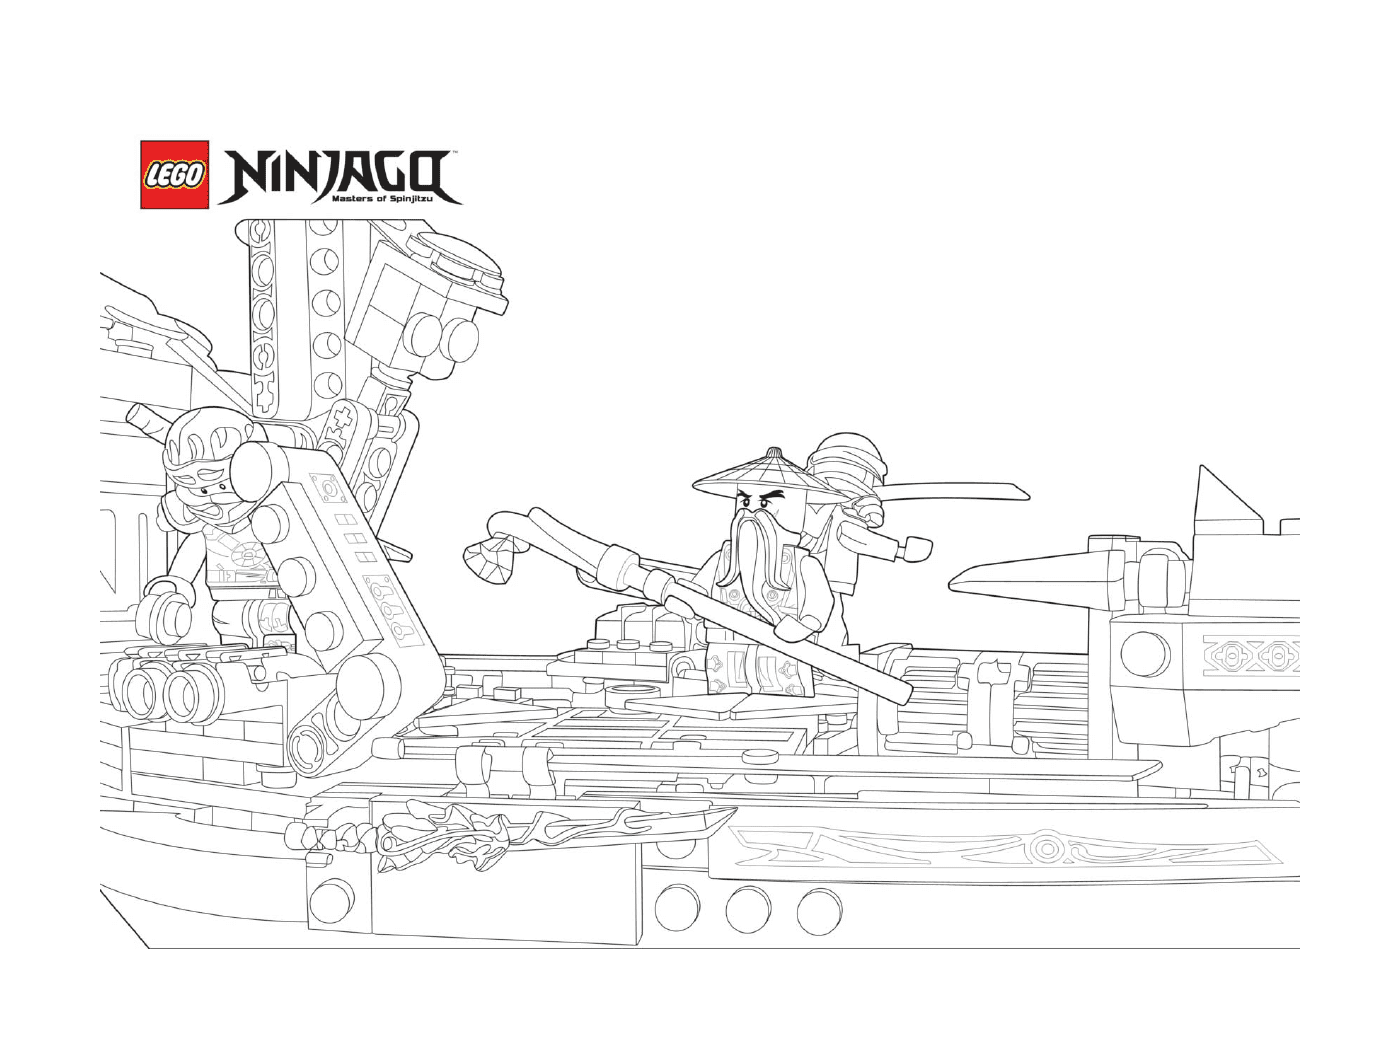   Bateau de ninjago avec sensei wu 